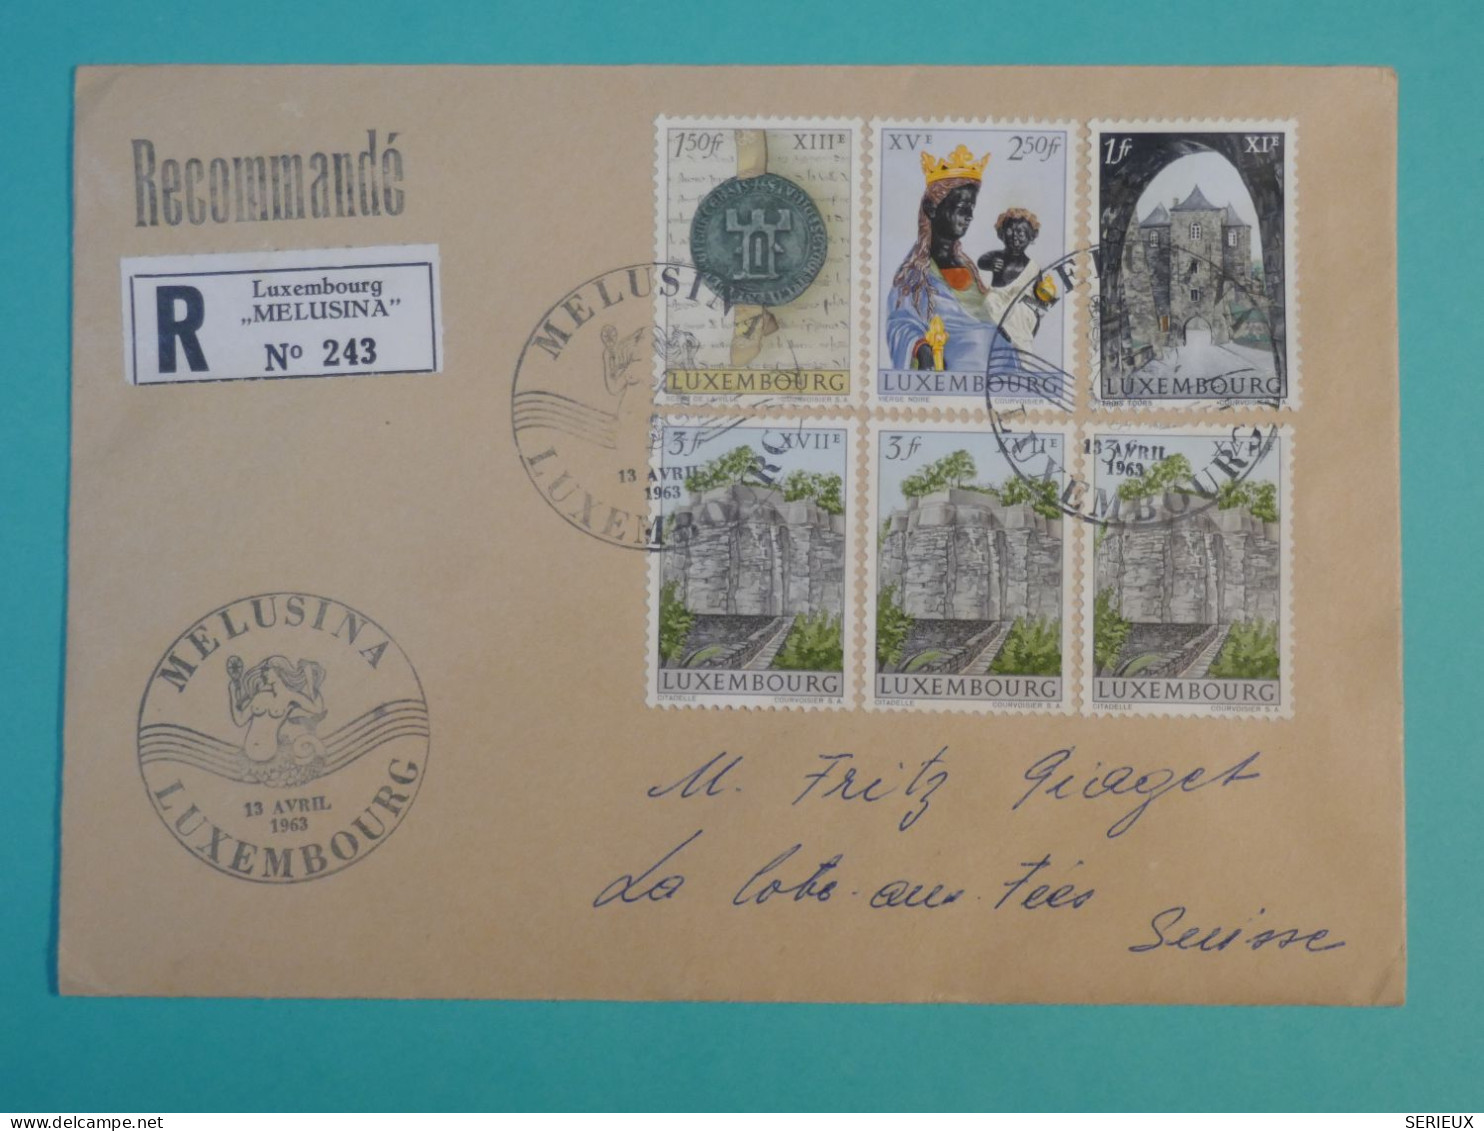 AG0  LUXEMBOURG  BELLE LETTRE RECO  1963    MELUSINA A LA COTE AUX FEES  SUISSE+   +AFF. INTERESSANT++ + - Lettres & Documents